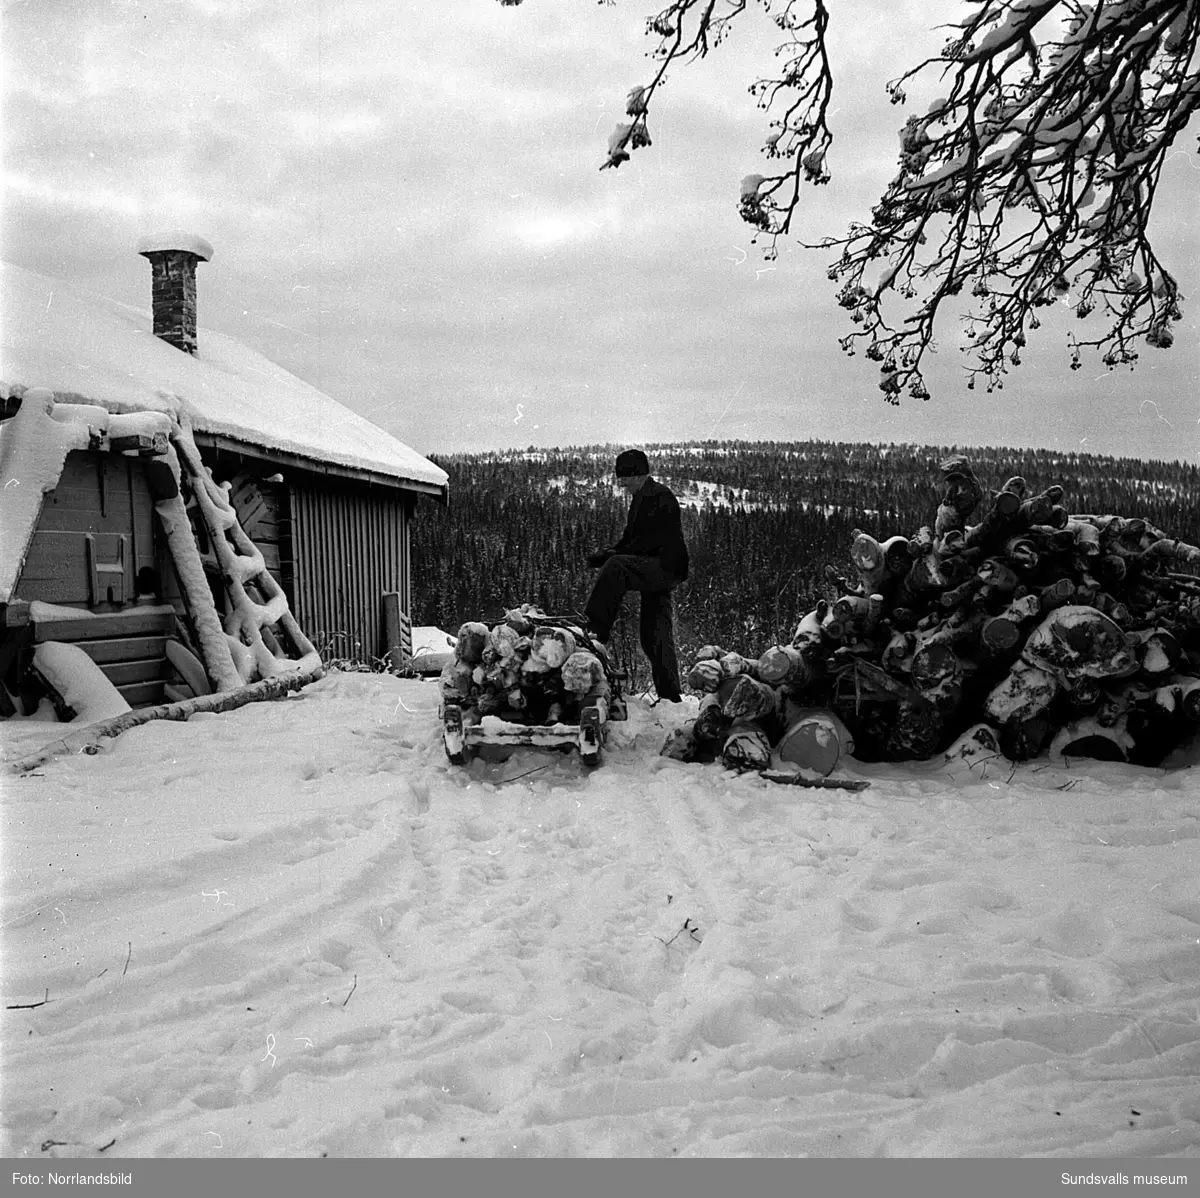 Reportagebilder från den oskiftade byn Brödlösa i Kovland. En av hemmansägarna i den lilla byn är Ferdinand Byström som har fullt upp med timmerkörning, snöskottning och utfodring av djuren. På den första bilden är det Karin Johansson som visar upp en slaktad tupp och om den bilden står att läsa i Dagbladet 10 januari 1951: "Jättetuppen av helig indisk ras blir som en julskinka i grytan, påstår Karin Johansson. Dödsdomen över tuppen avkunnades och verkställdes av mamma Jenny, sedan hon ertappat honom på bar gärning med att trampa ihjäl en höna. Död åt tyranniska karlar av vad kulör de vara månde."